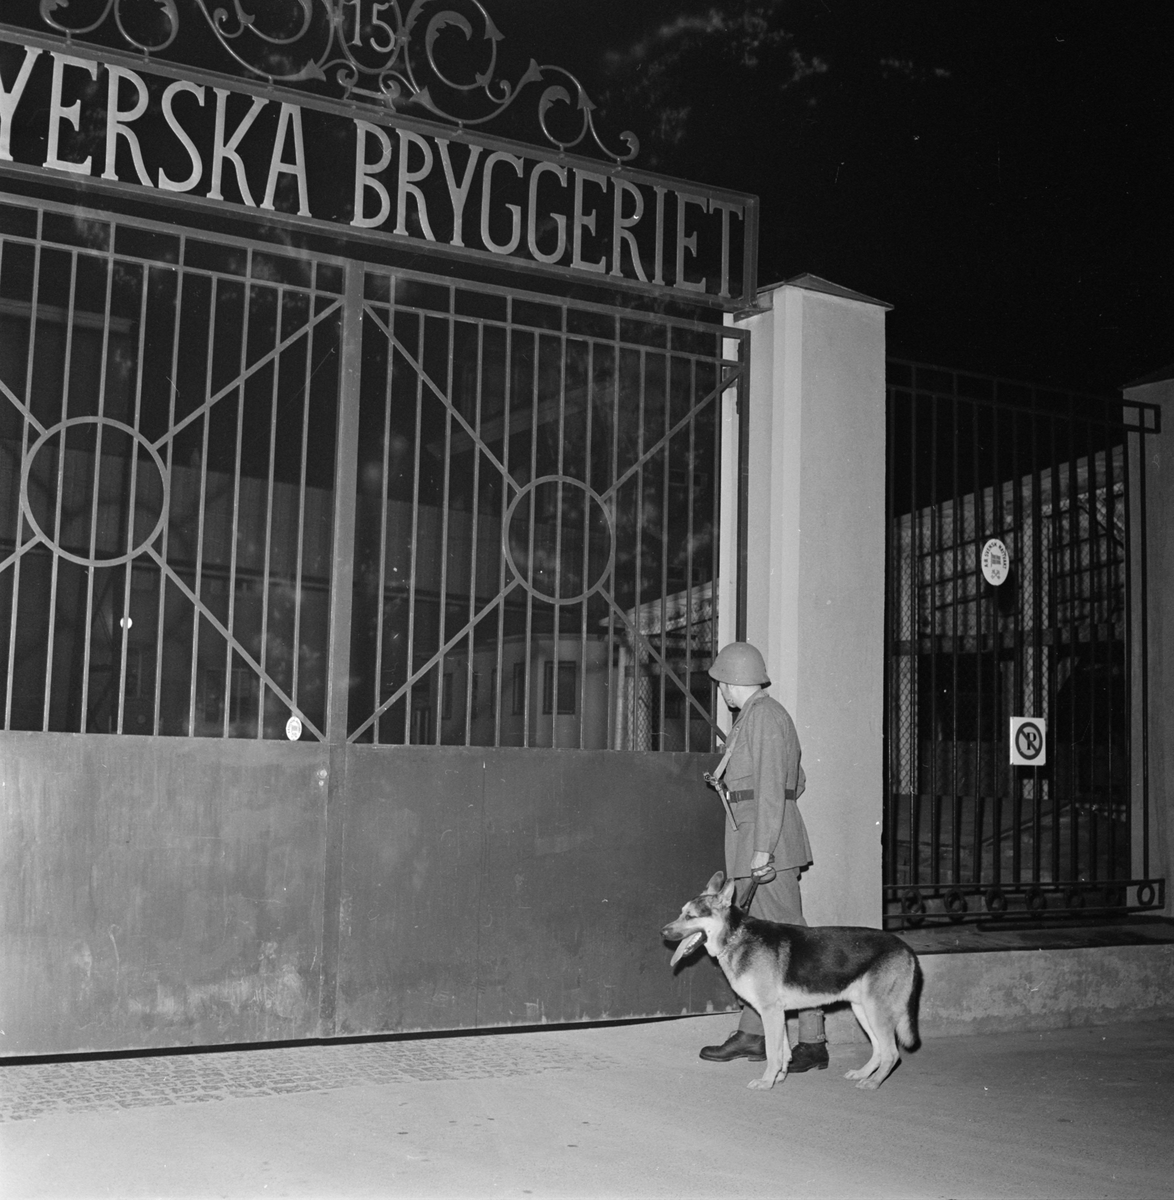 Nattvakt med hund vid Upsala Bayerska Bryggeri i kvarteret Sandbacken, Dragarbrunn, Uppsala